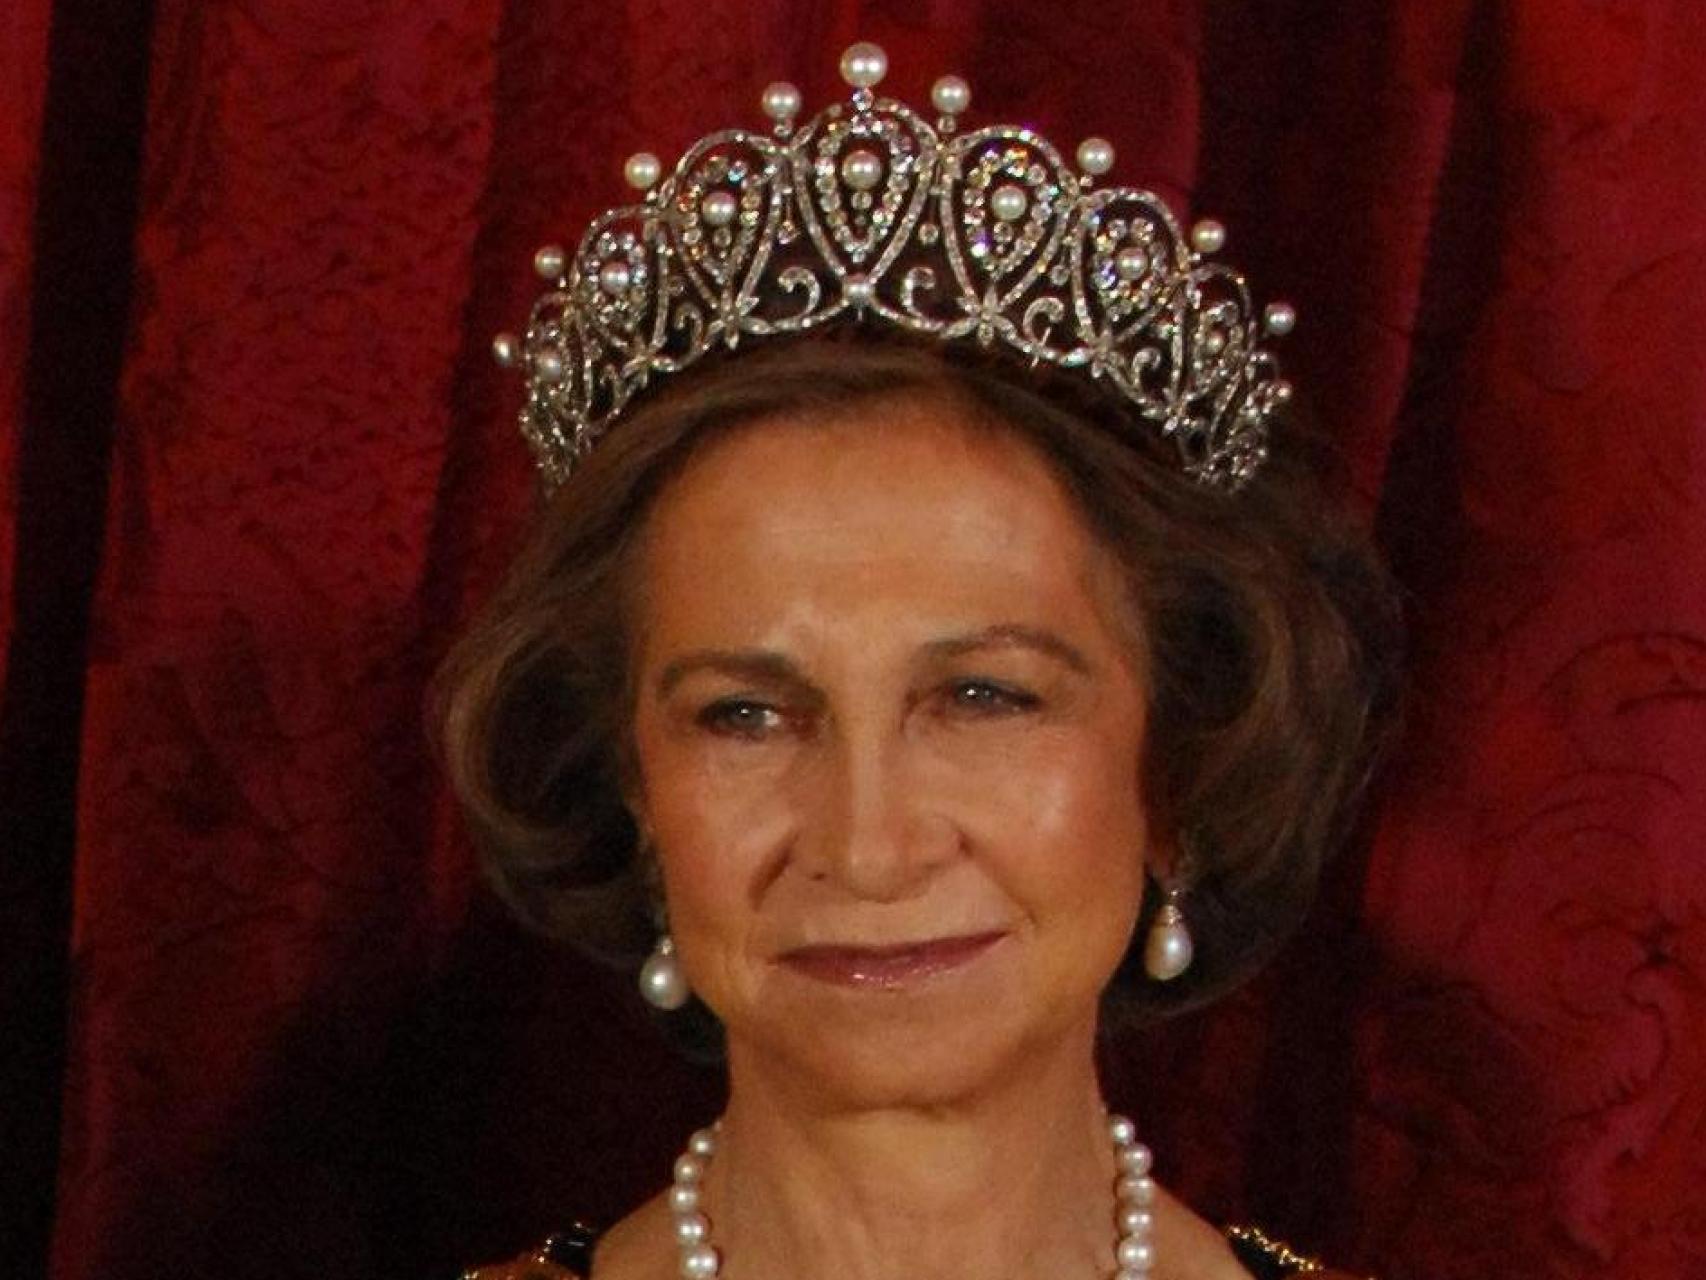 La reina Sofía con la tiara Rusa sobre su cabeza.